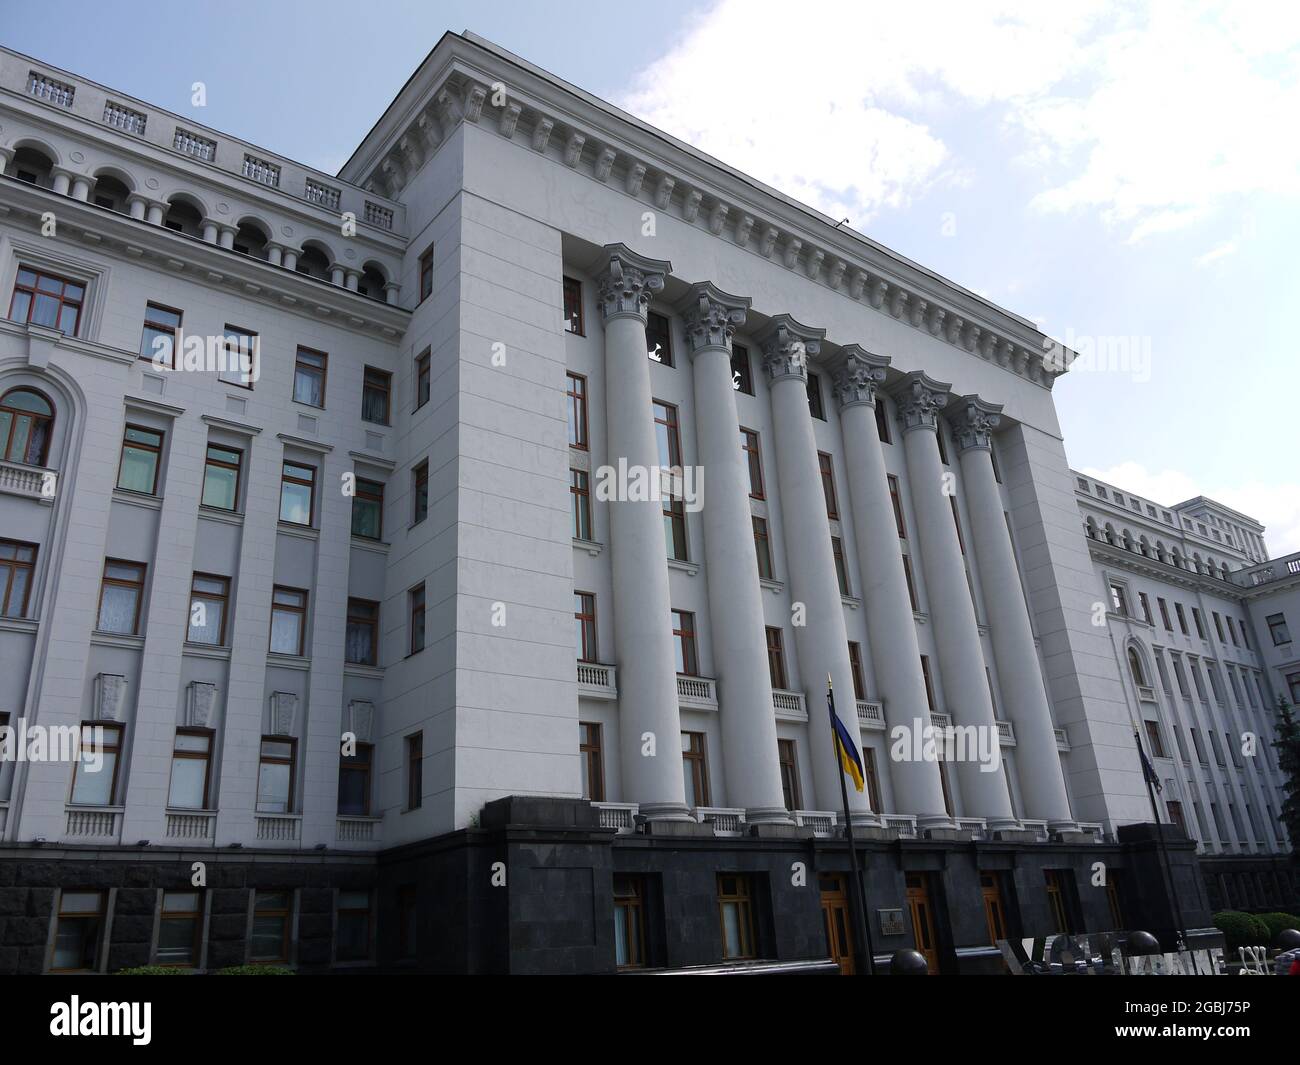 The Ukrainian Presidency building in Kiev Stock Photo